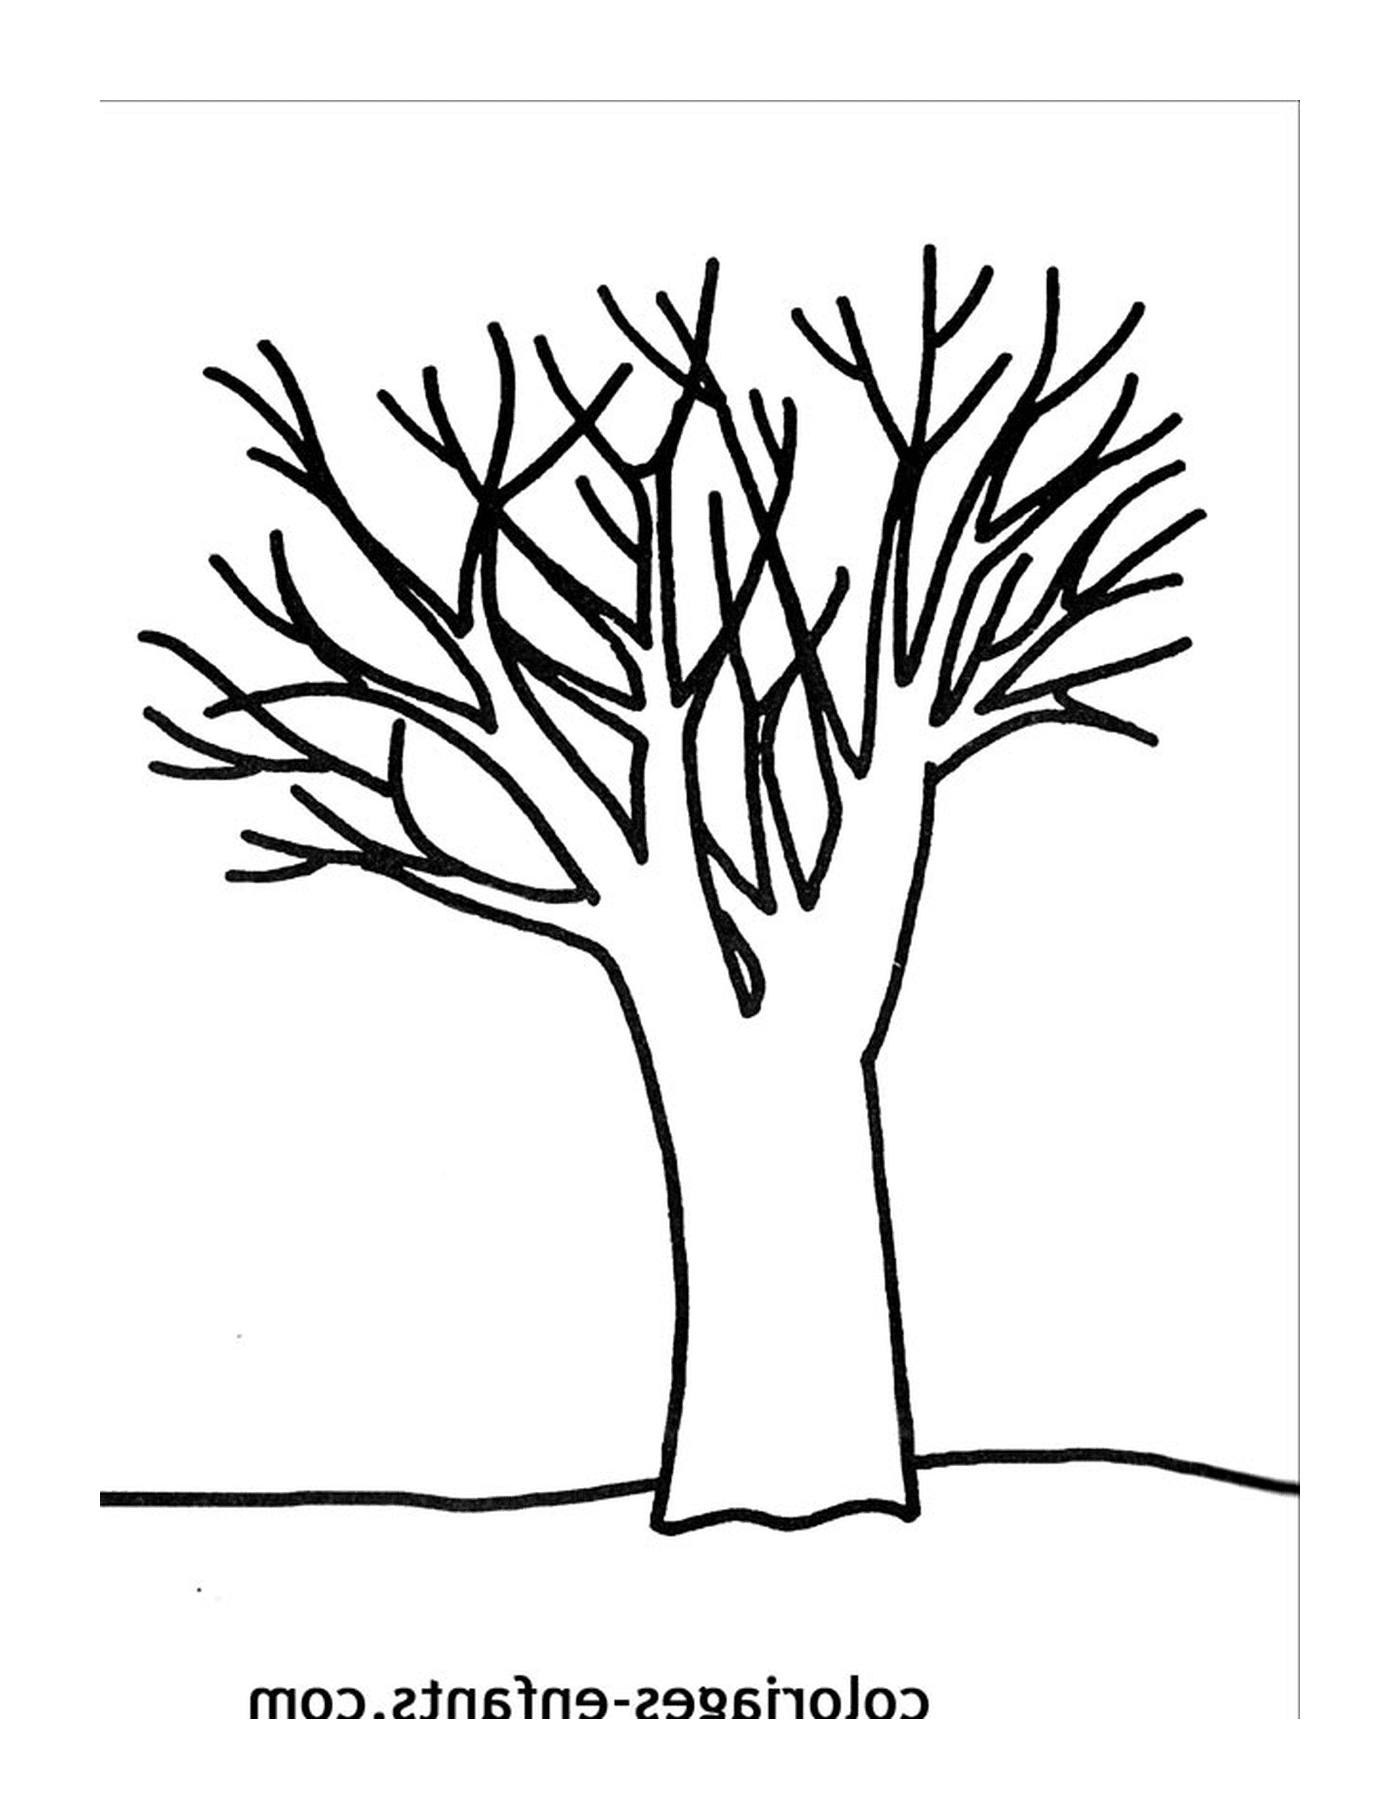  A bare tree 